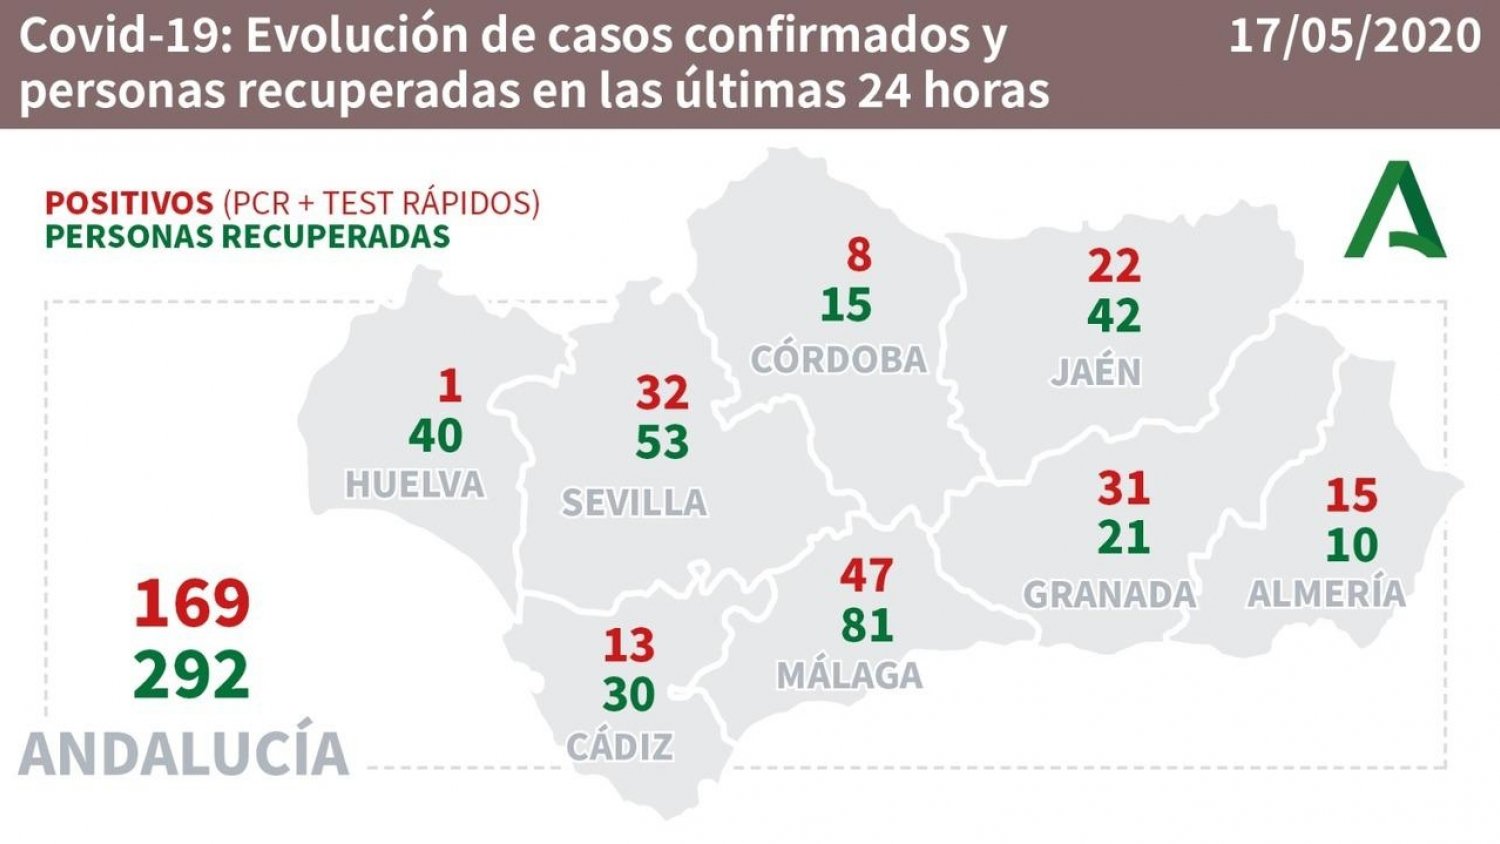 Málaga auna 47 contagios, 81 curados y cero fallecidos en las últimas 24 horas